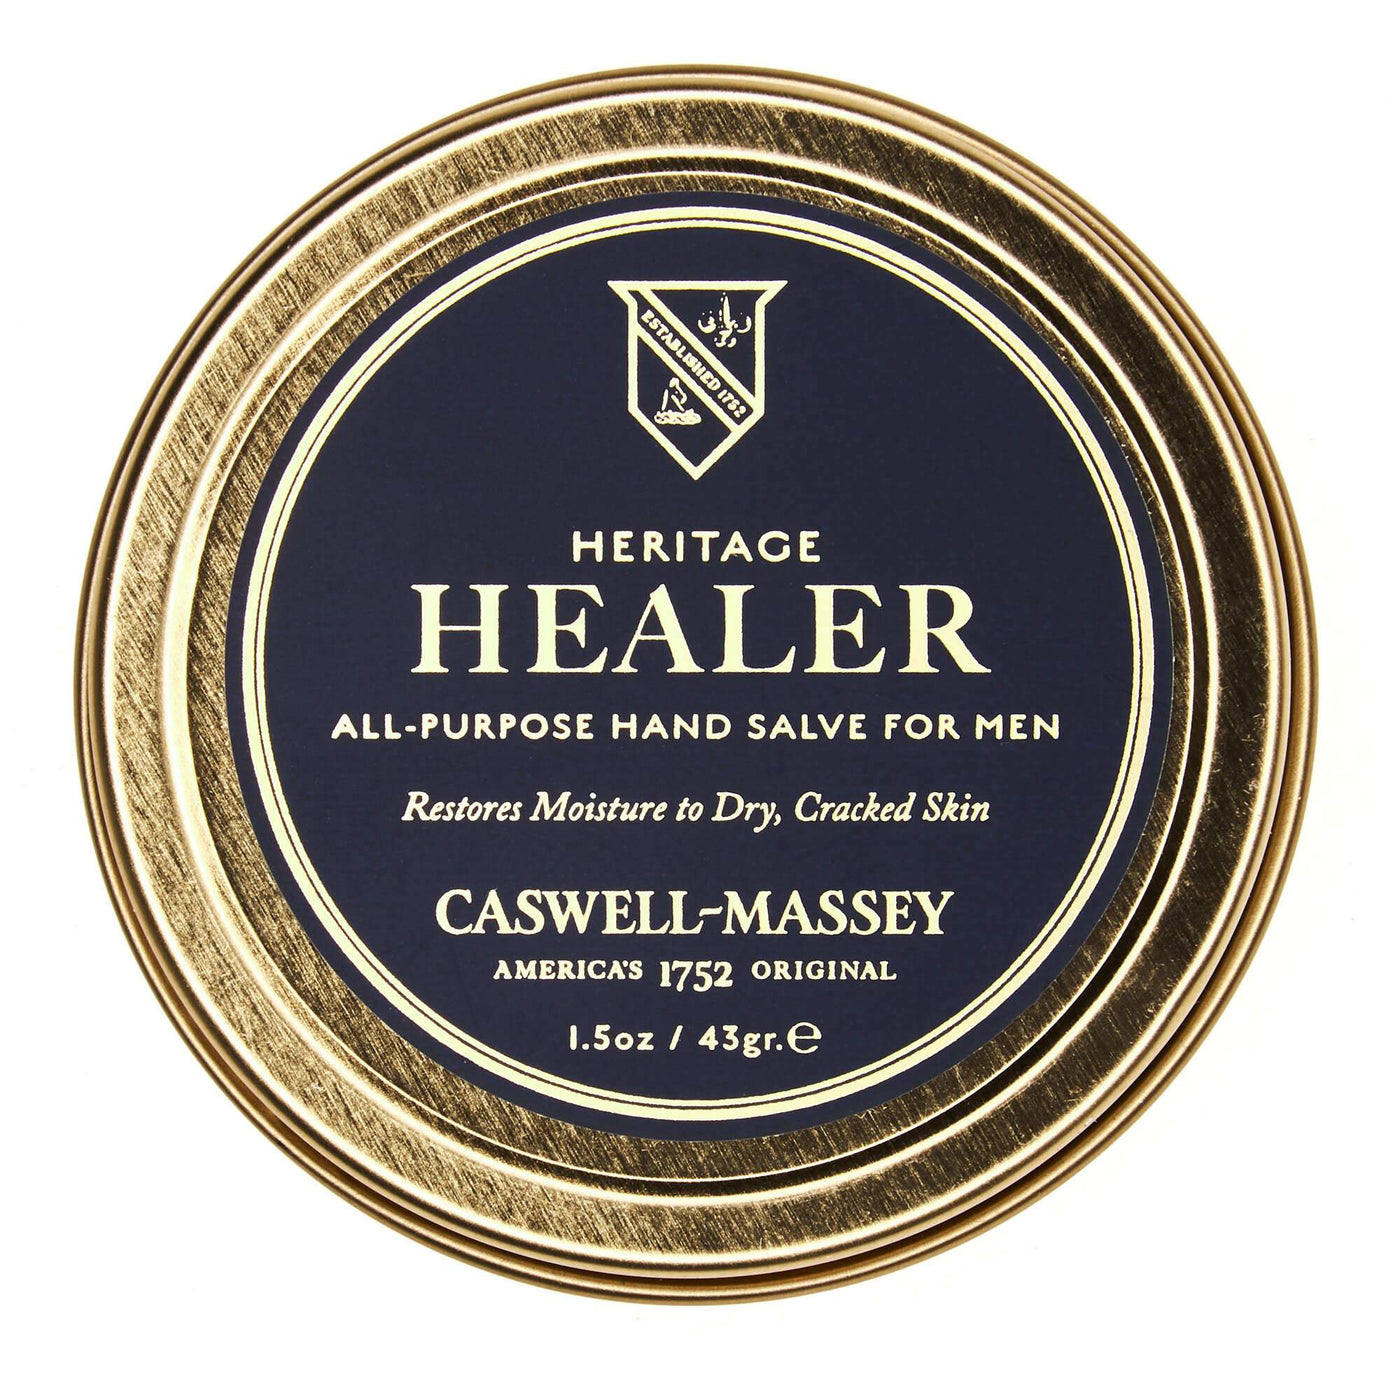 Heritage Healer Hand Salve for Men